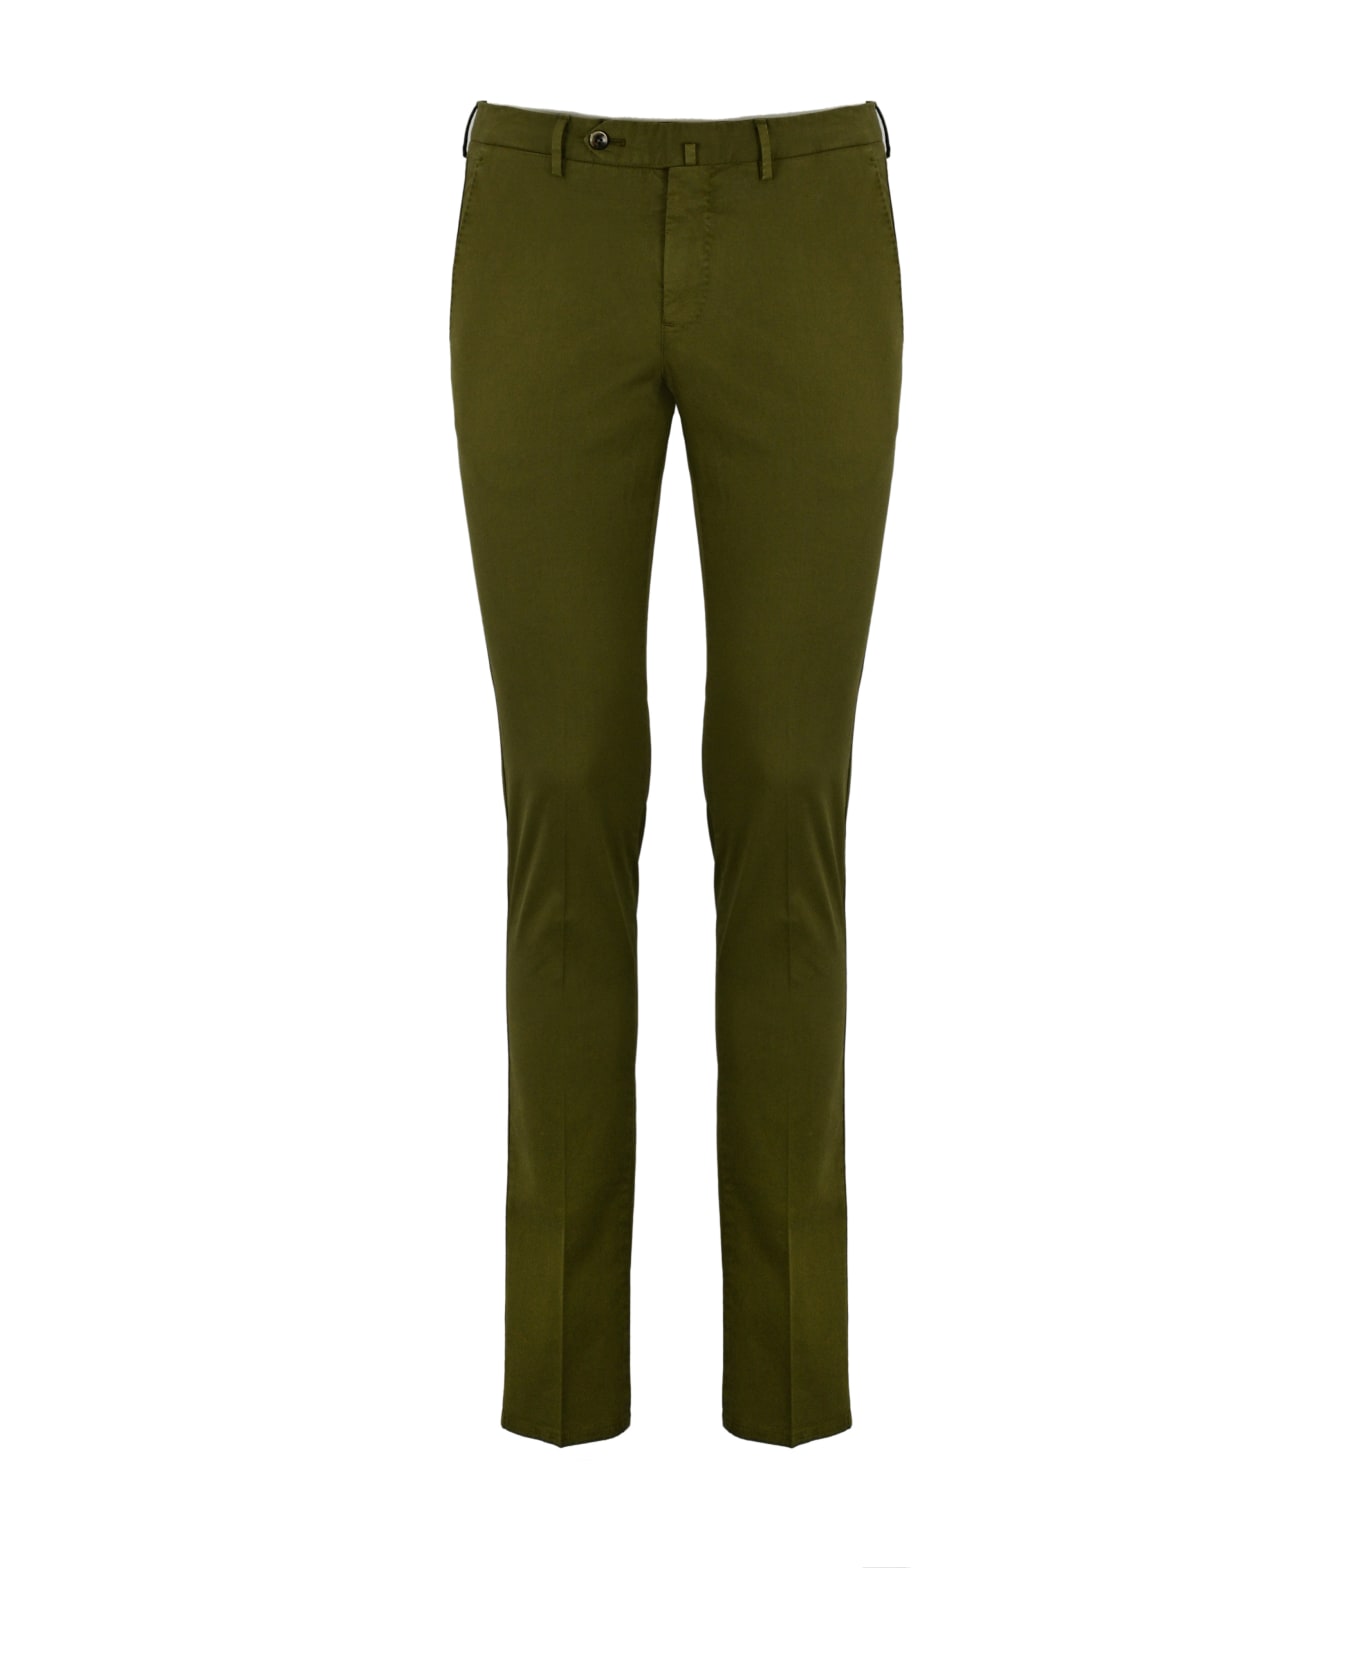 PT Torino Cotton Gabardine Trousers - Verde ボトムス